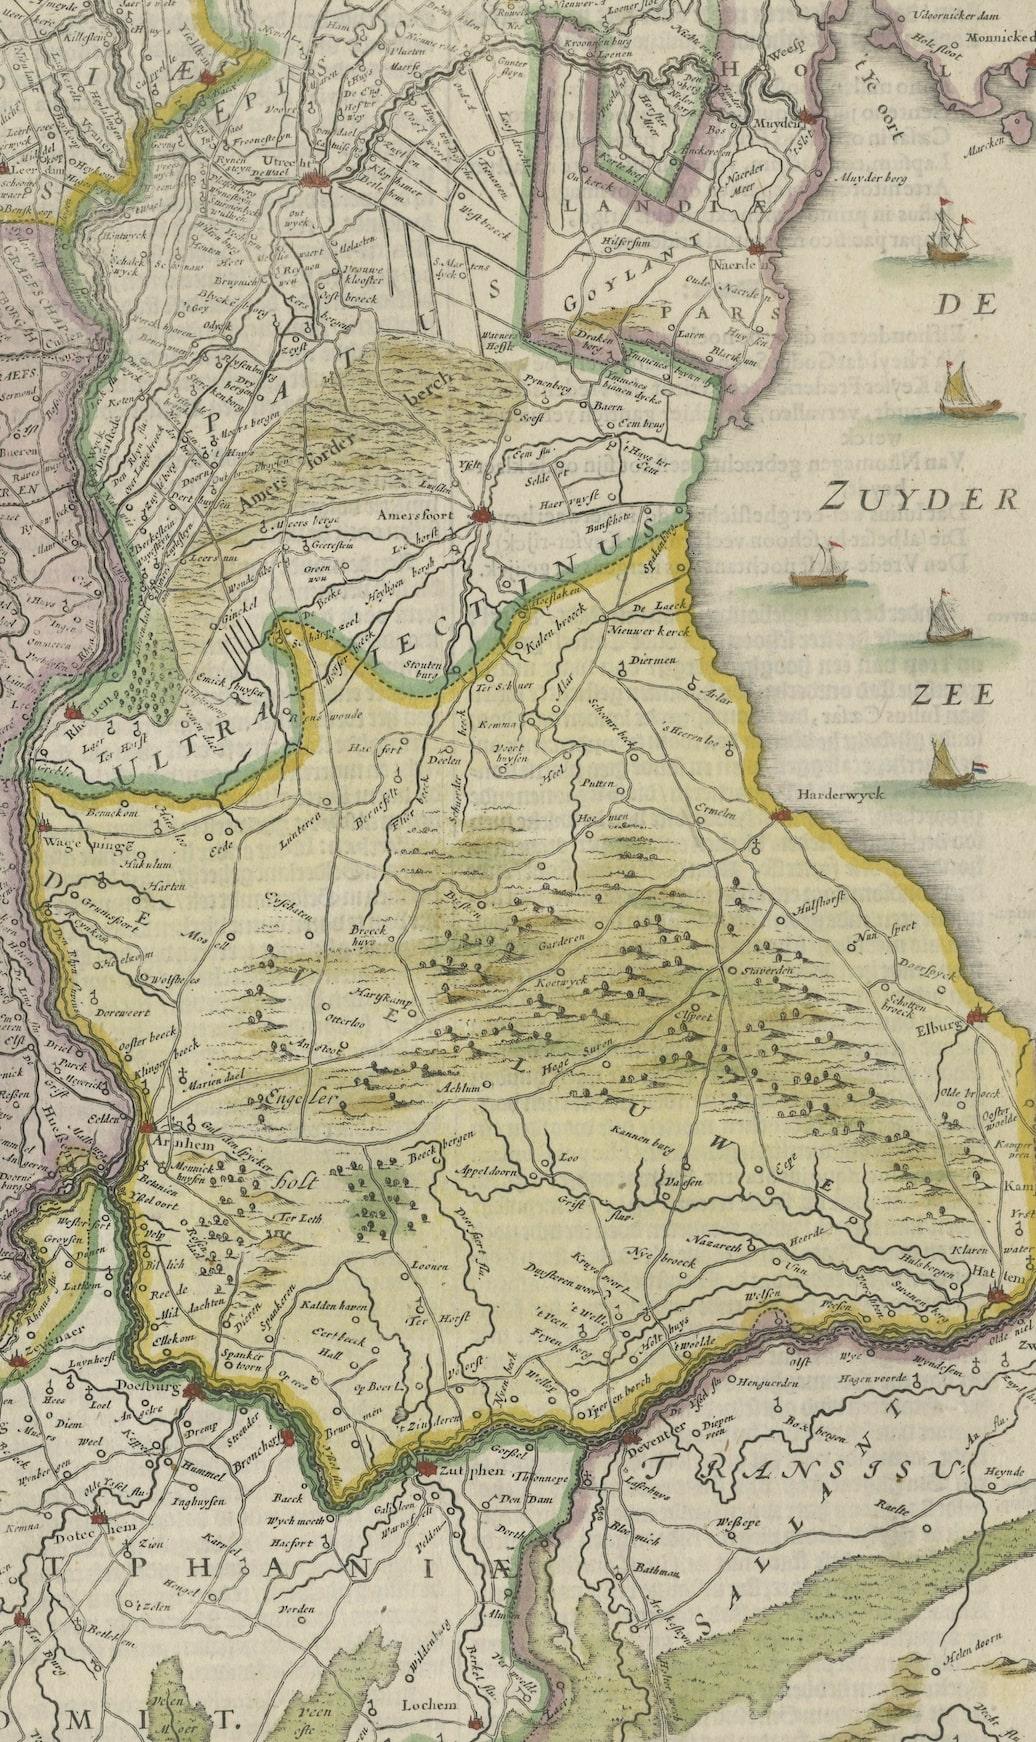 gelderland map